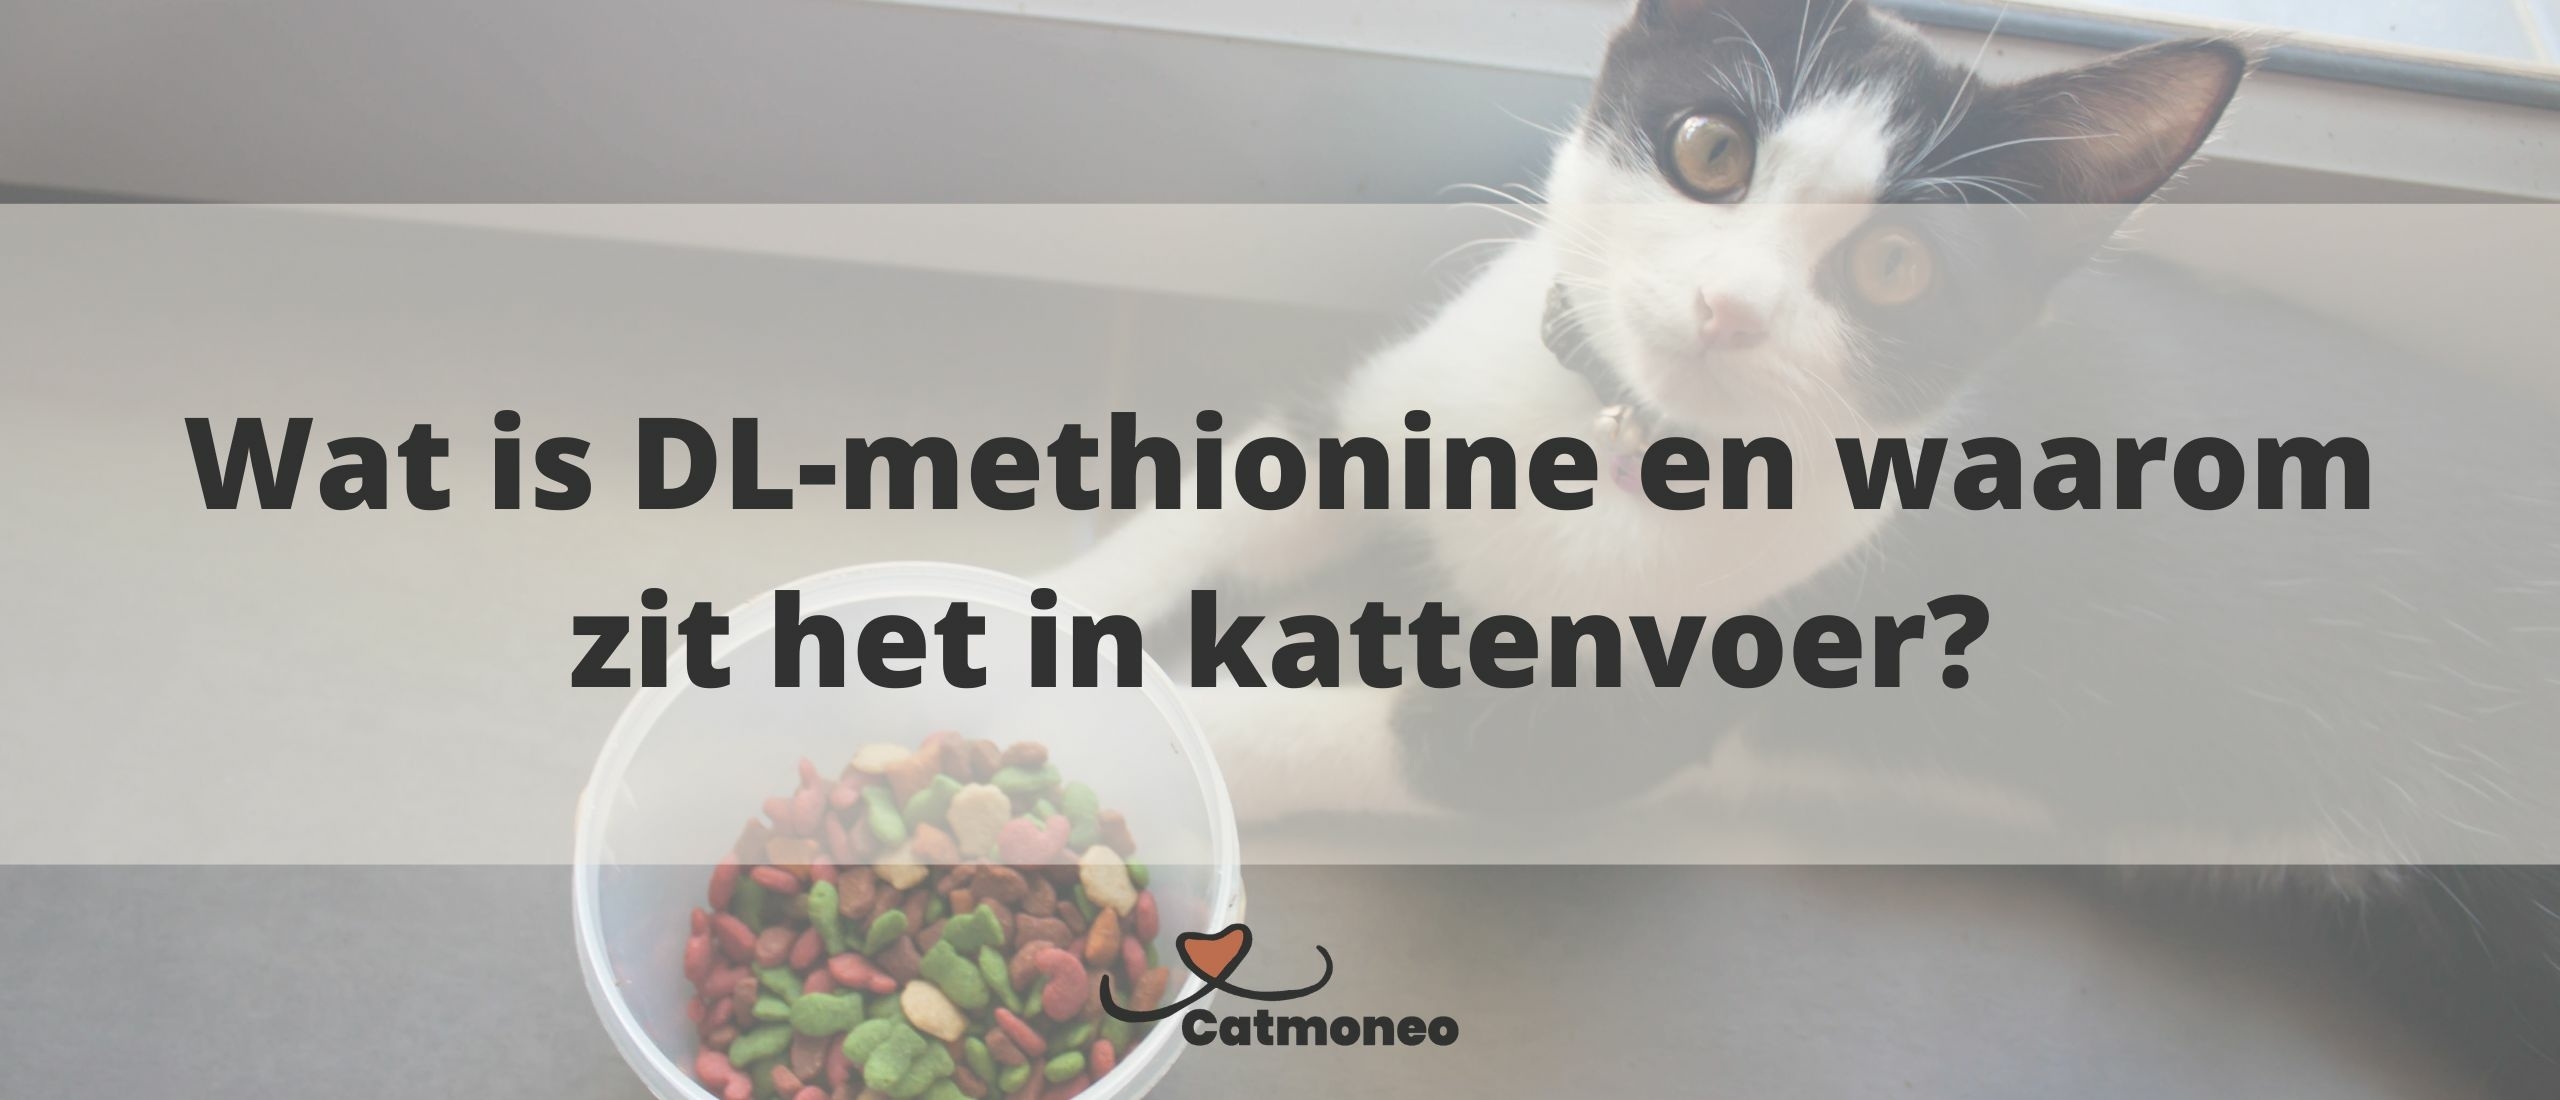 DL-methionine in kattenvoer: Gevaarlijk of niet, en bij welke hoeveelheden?